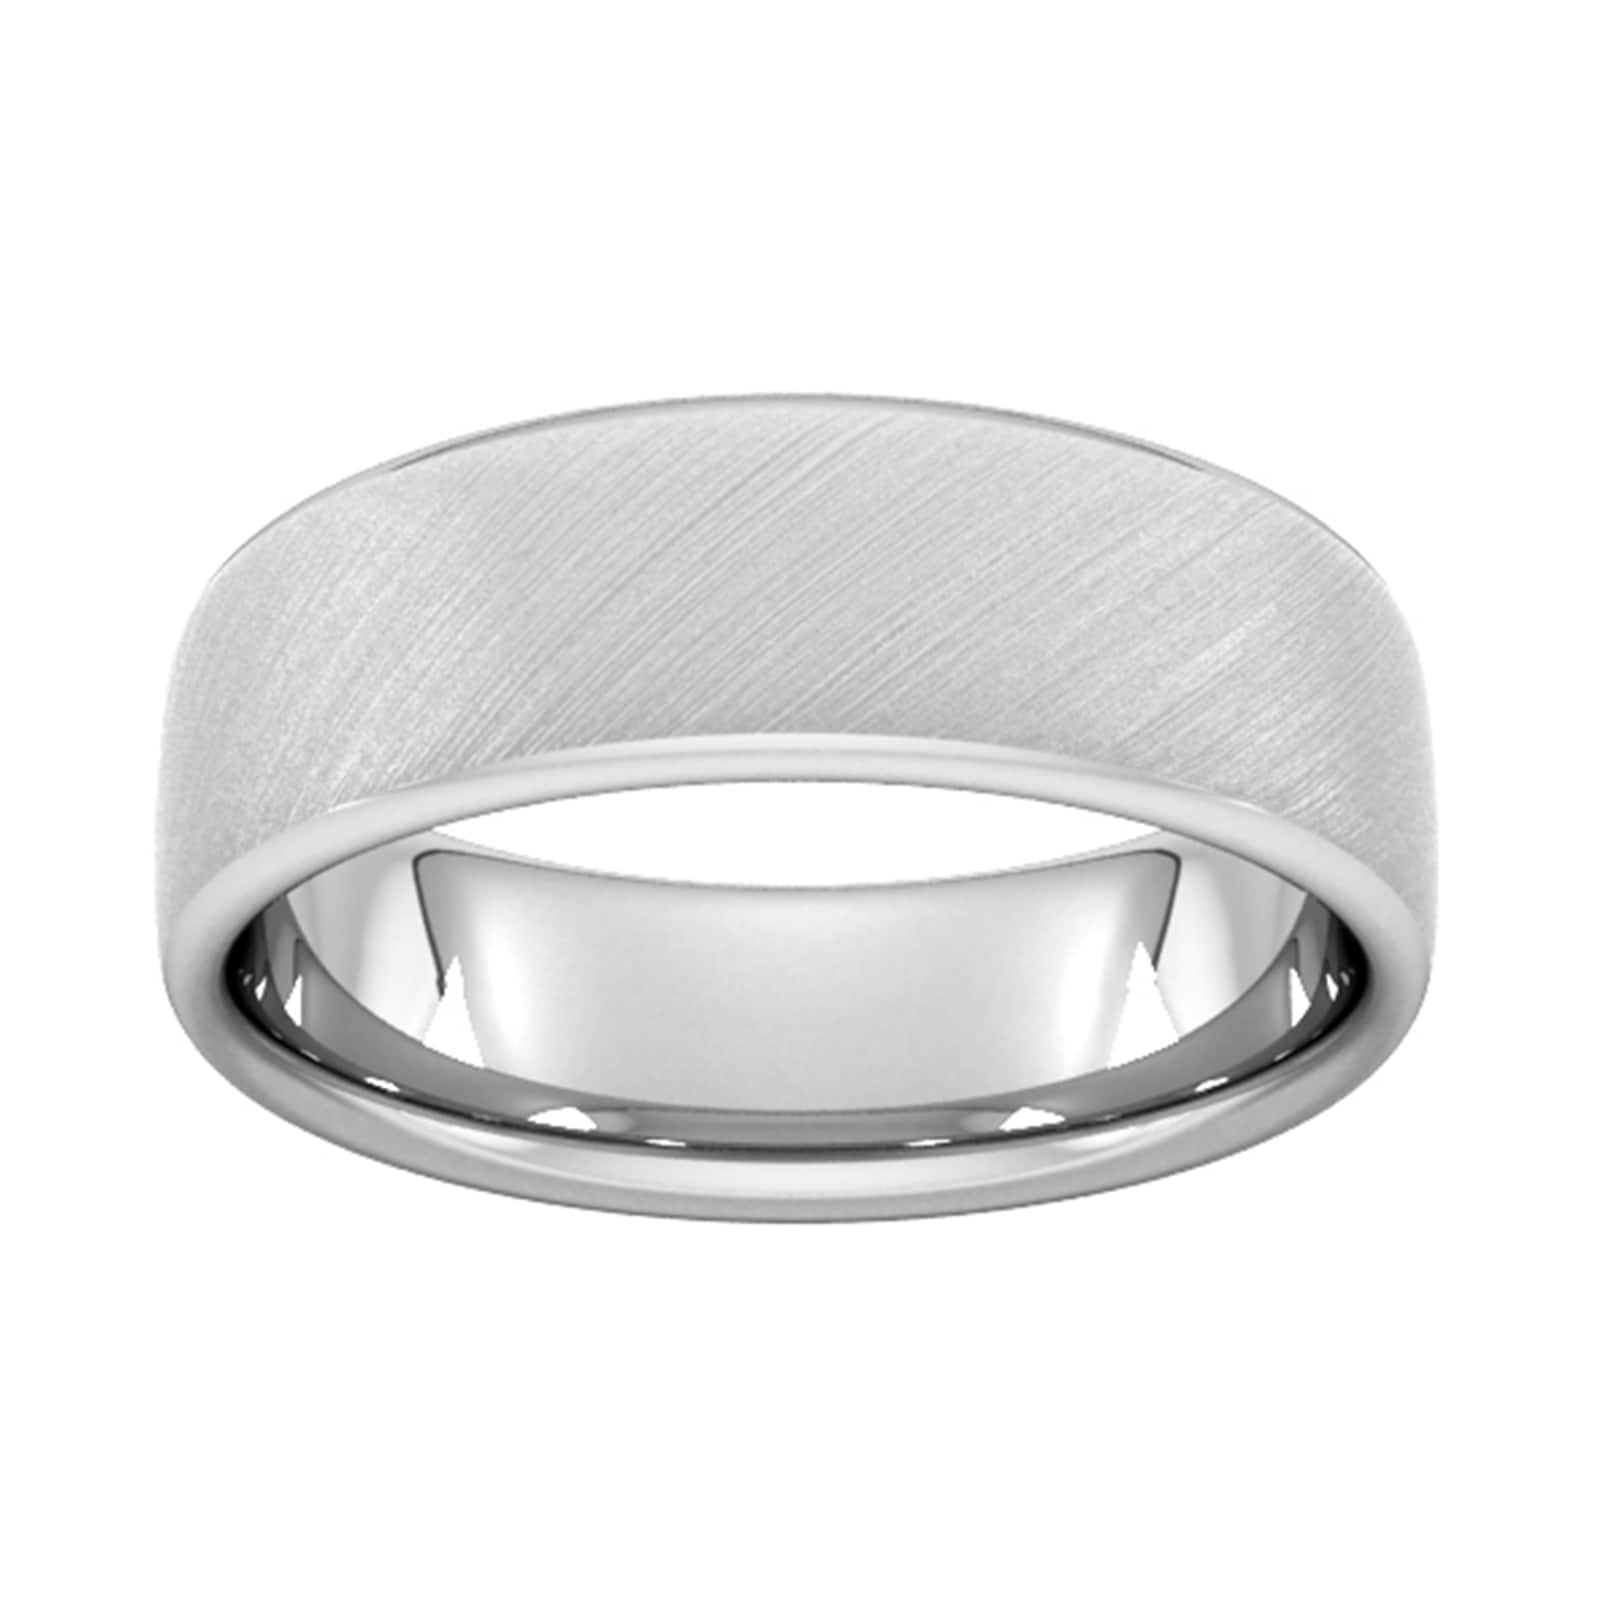 7mm Slight Court Extra Heavy Diagonal Matt Finish Wedding Ring In 950 Palladium - Ring Size L